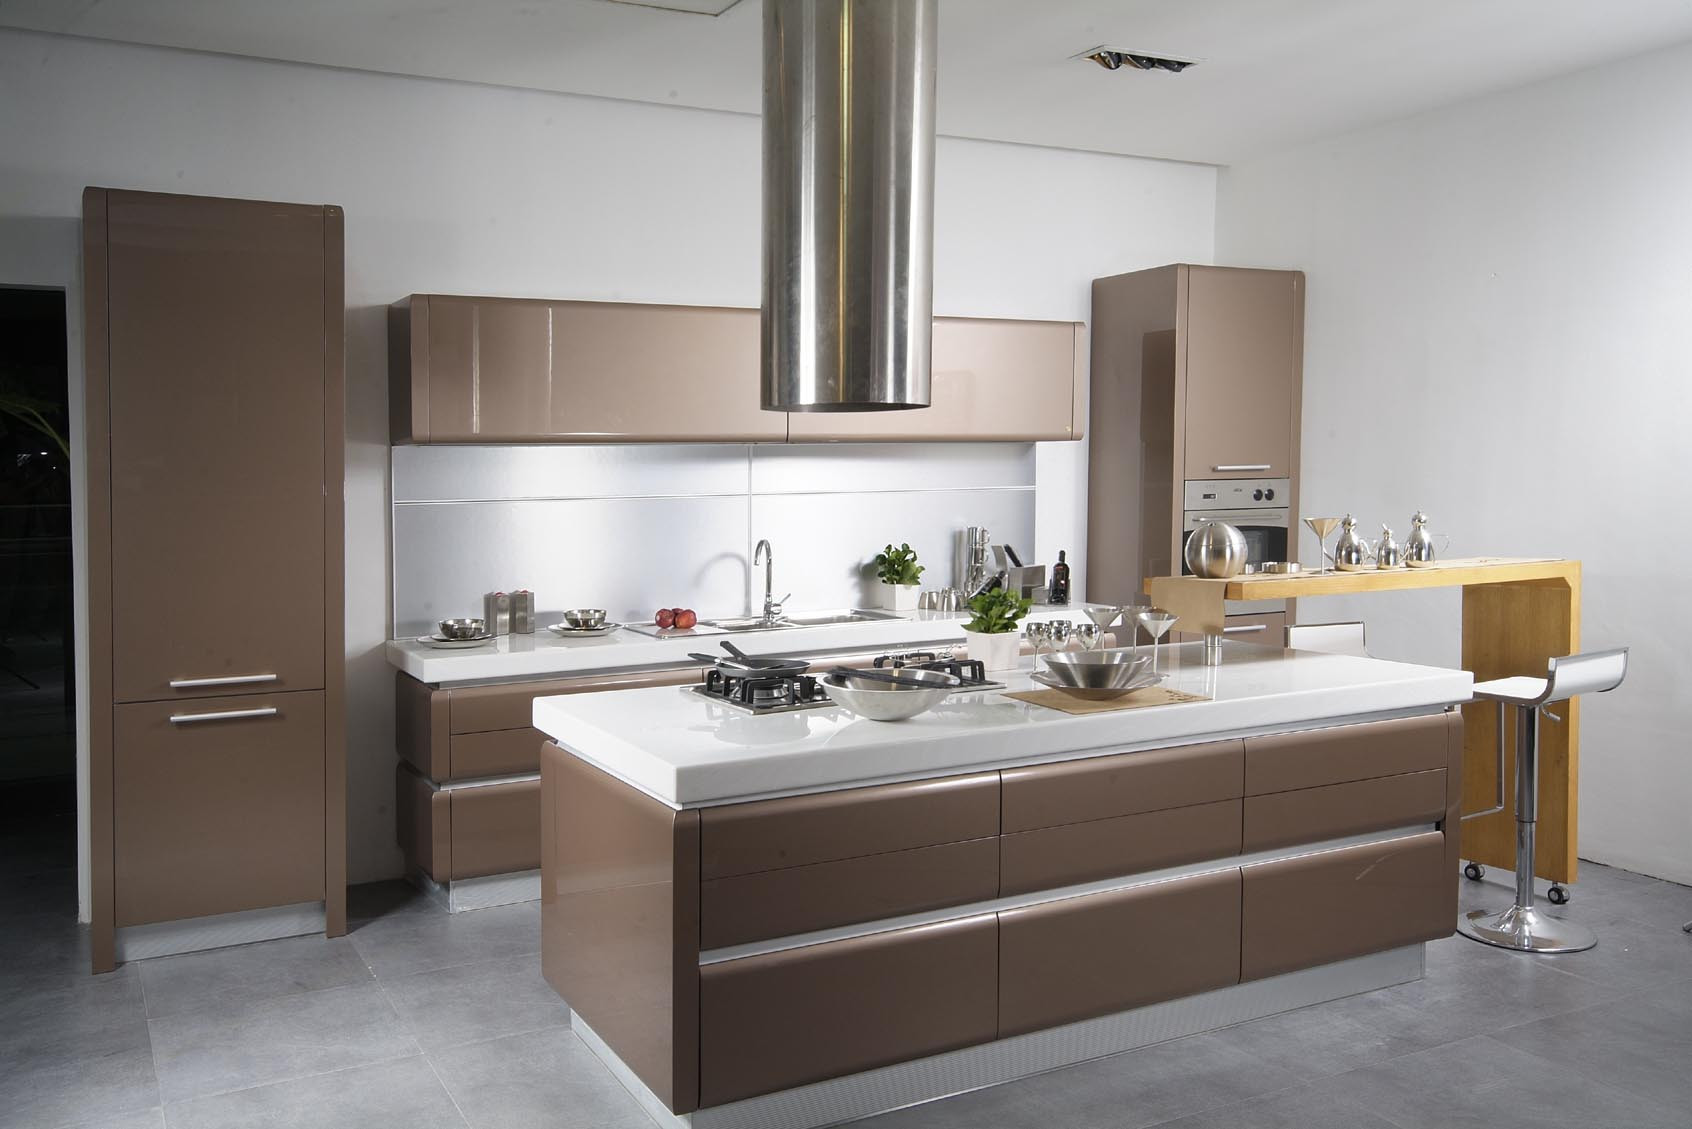 Modern Kitchen Design Ideas
 25 Kitchen Design Ideas For Your Home